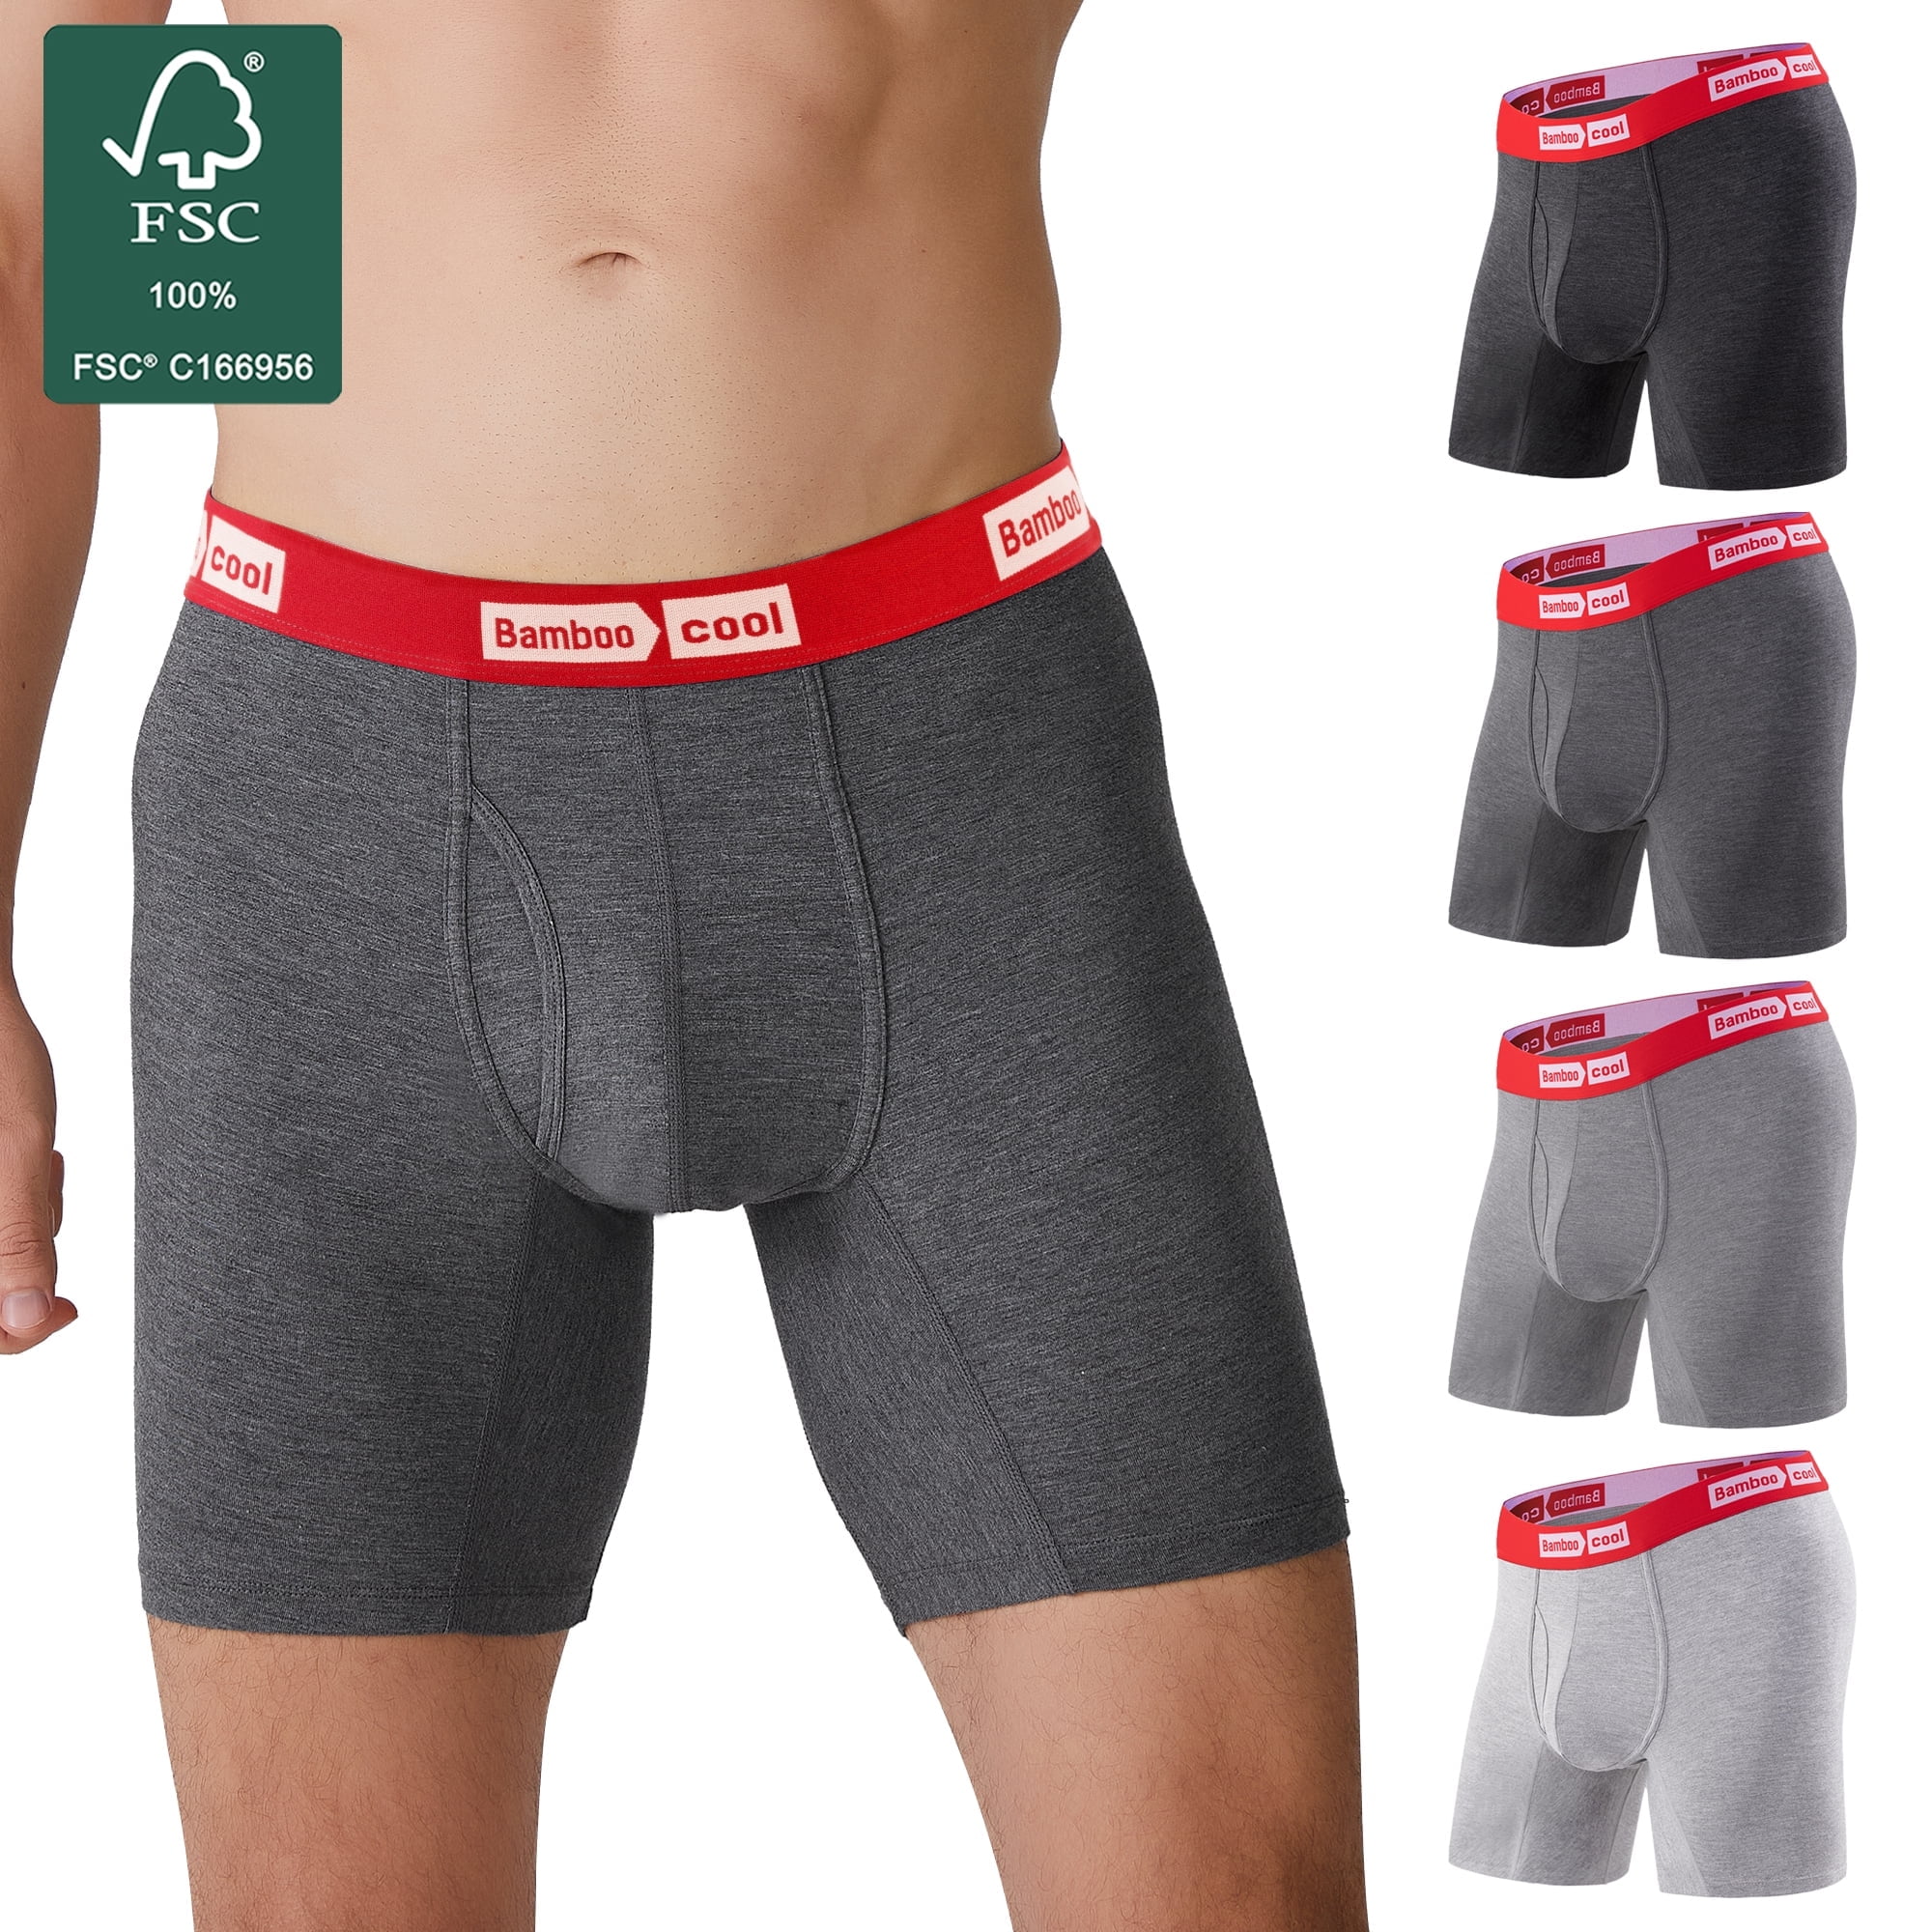 ZONBAILON Mens Underwear Boxer Briefs Short Leg Low Rise Trunks :  : Clothing, Shoes & Accessories